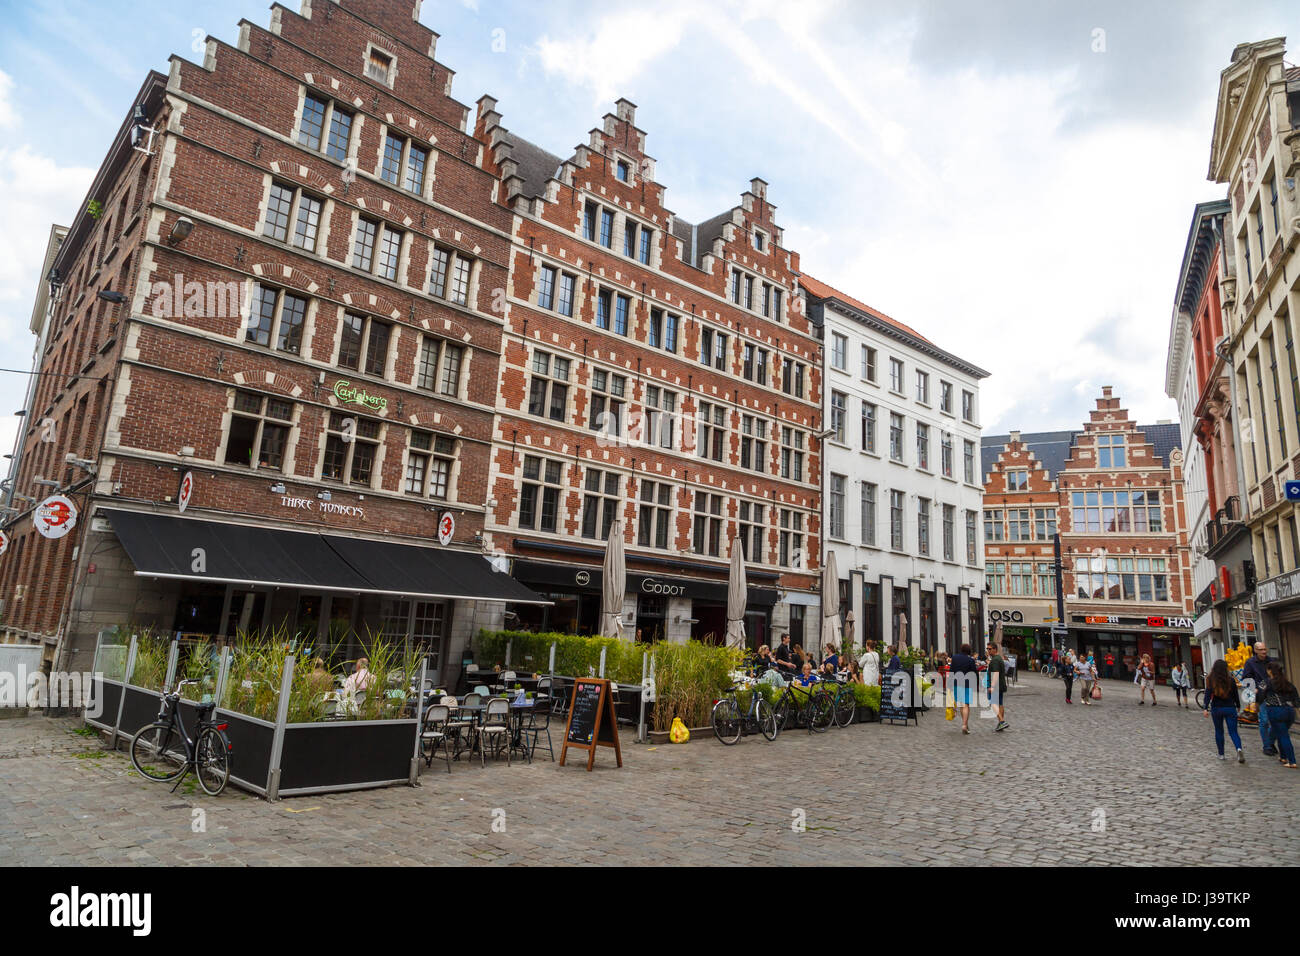 Gand, Belgique - Juillet 6, 2016 Gand : Cité médiévale avec des rues et bâtiments colorés. Gent est populaire en Belgique. Banque D'Images